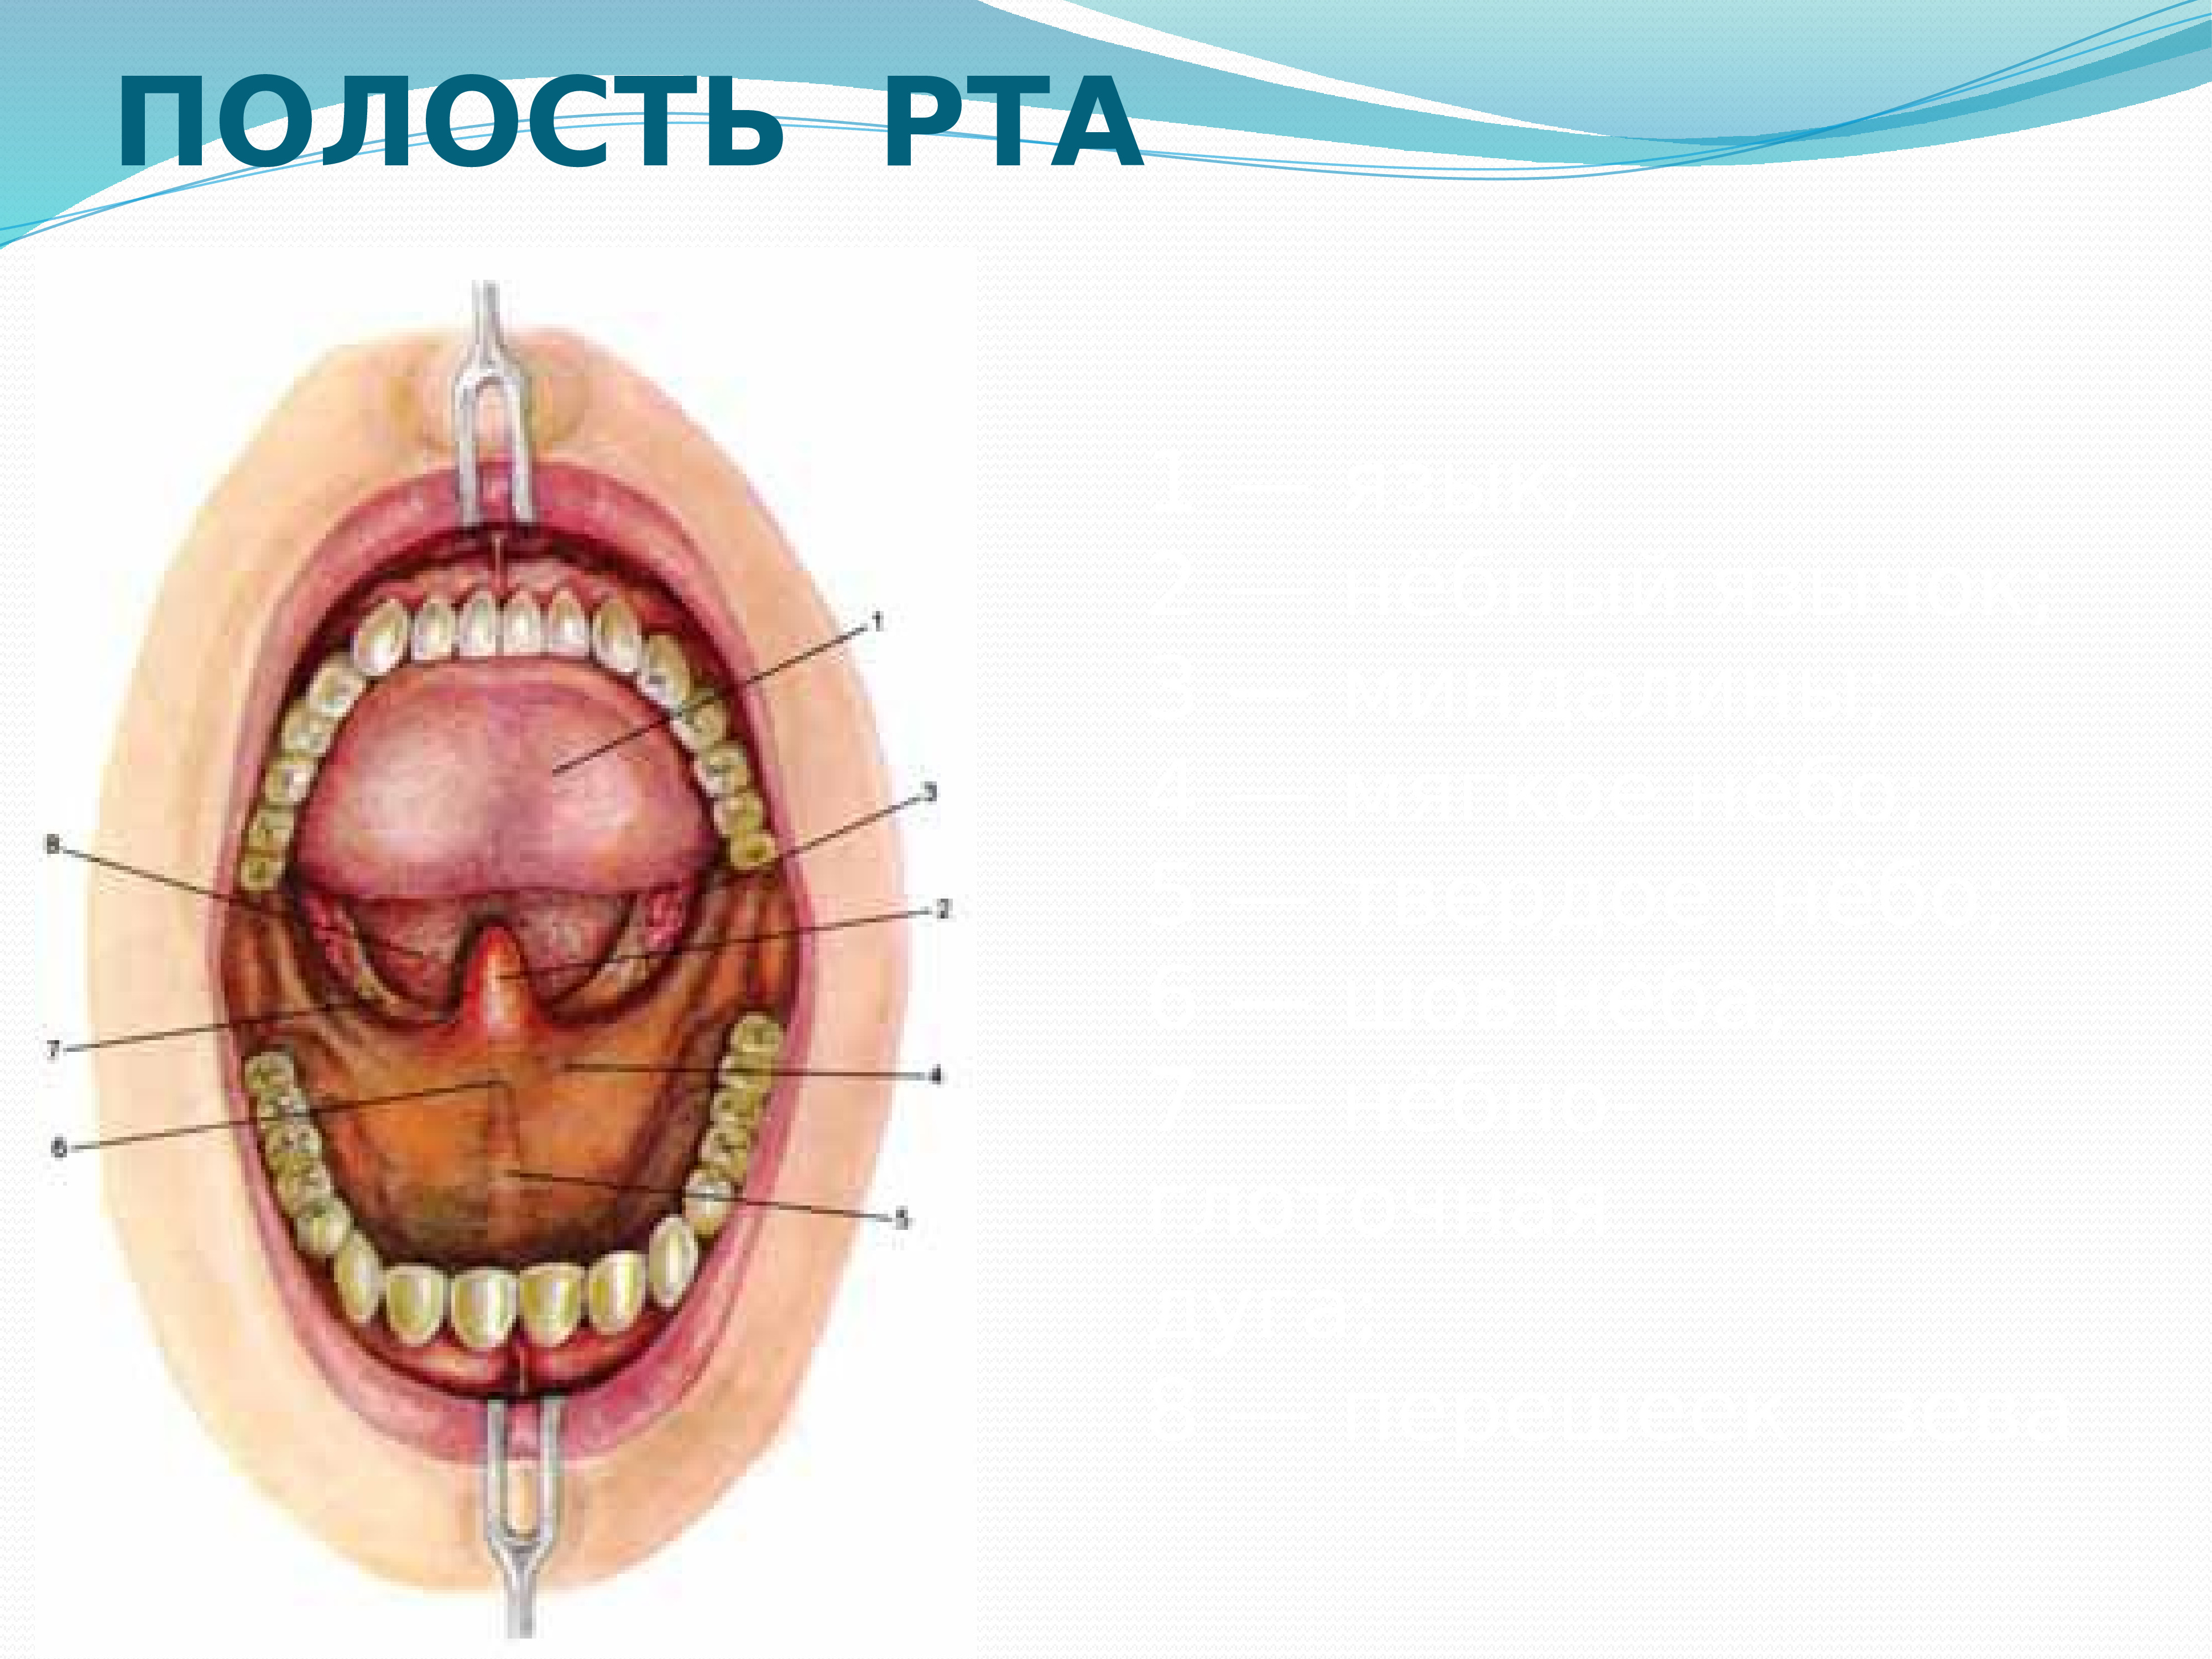 Нижняя часть рта. Анатомическое строение ротовой полости. Полость рта вид спереди. Строение внутри полости рта.